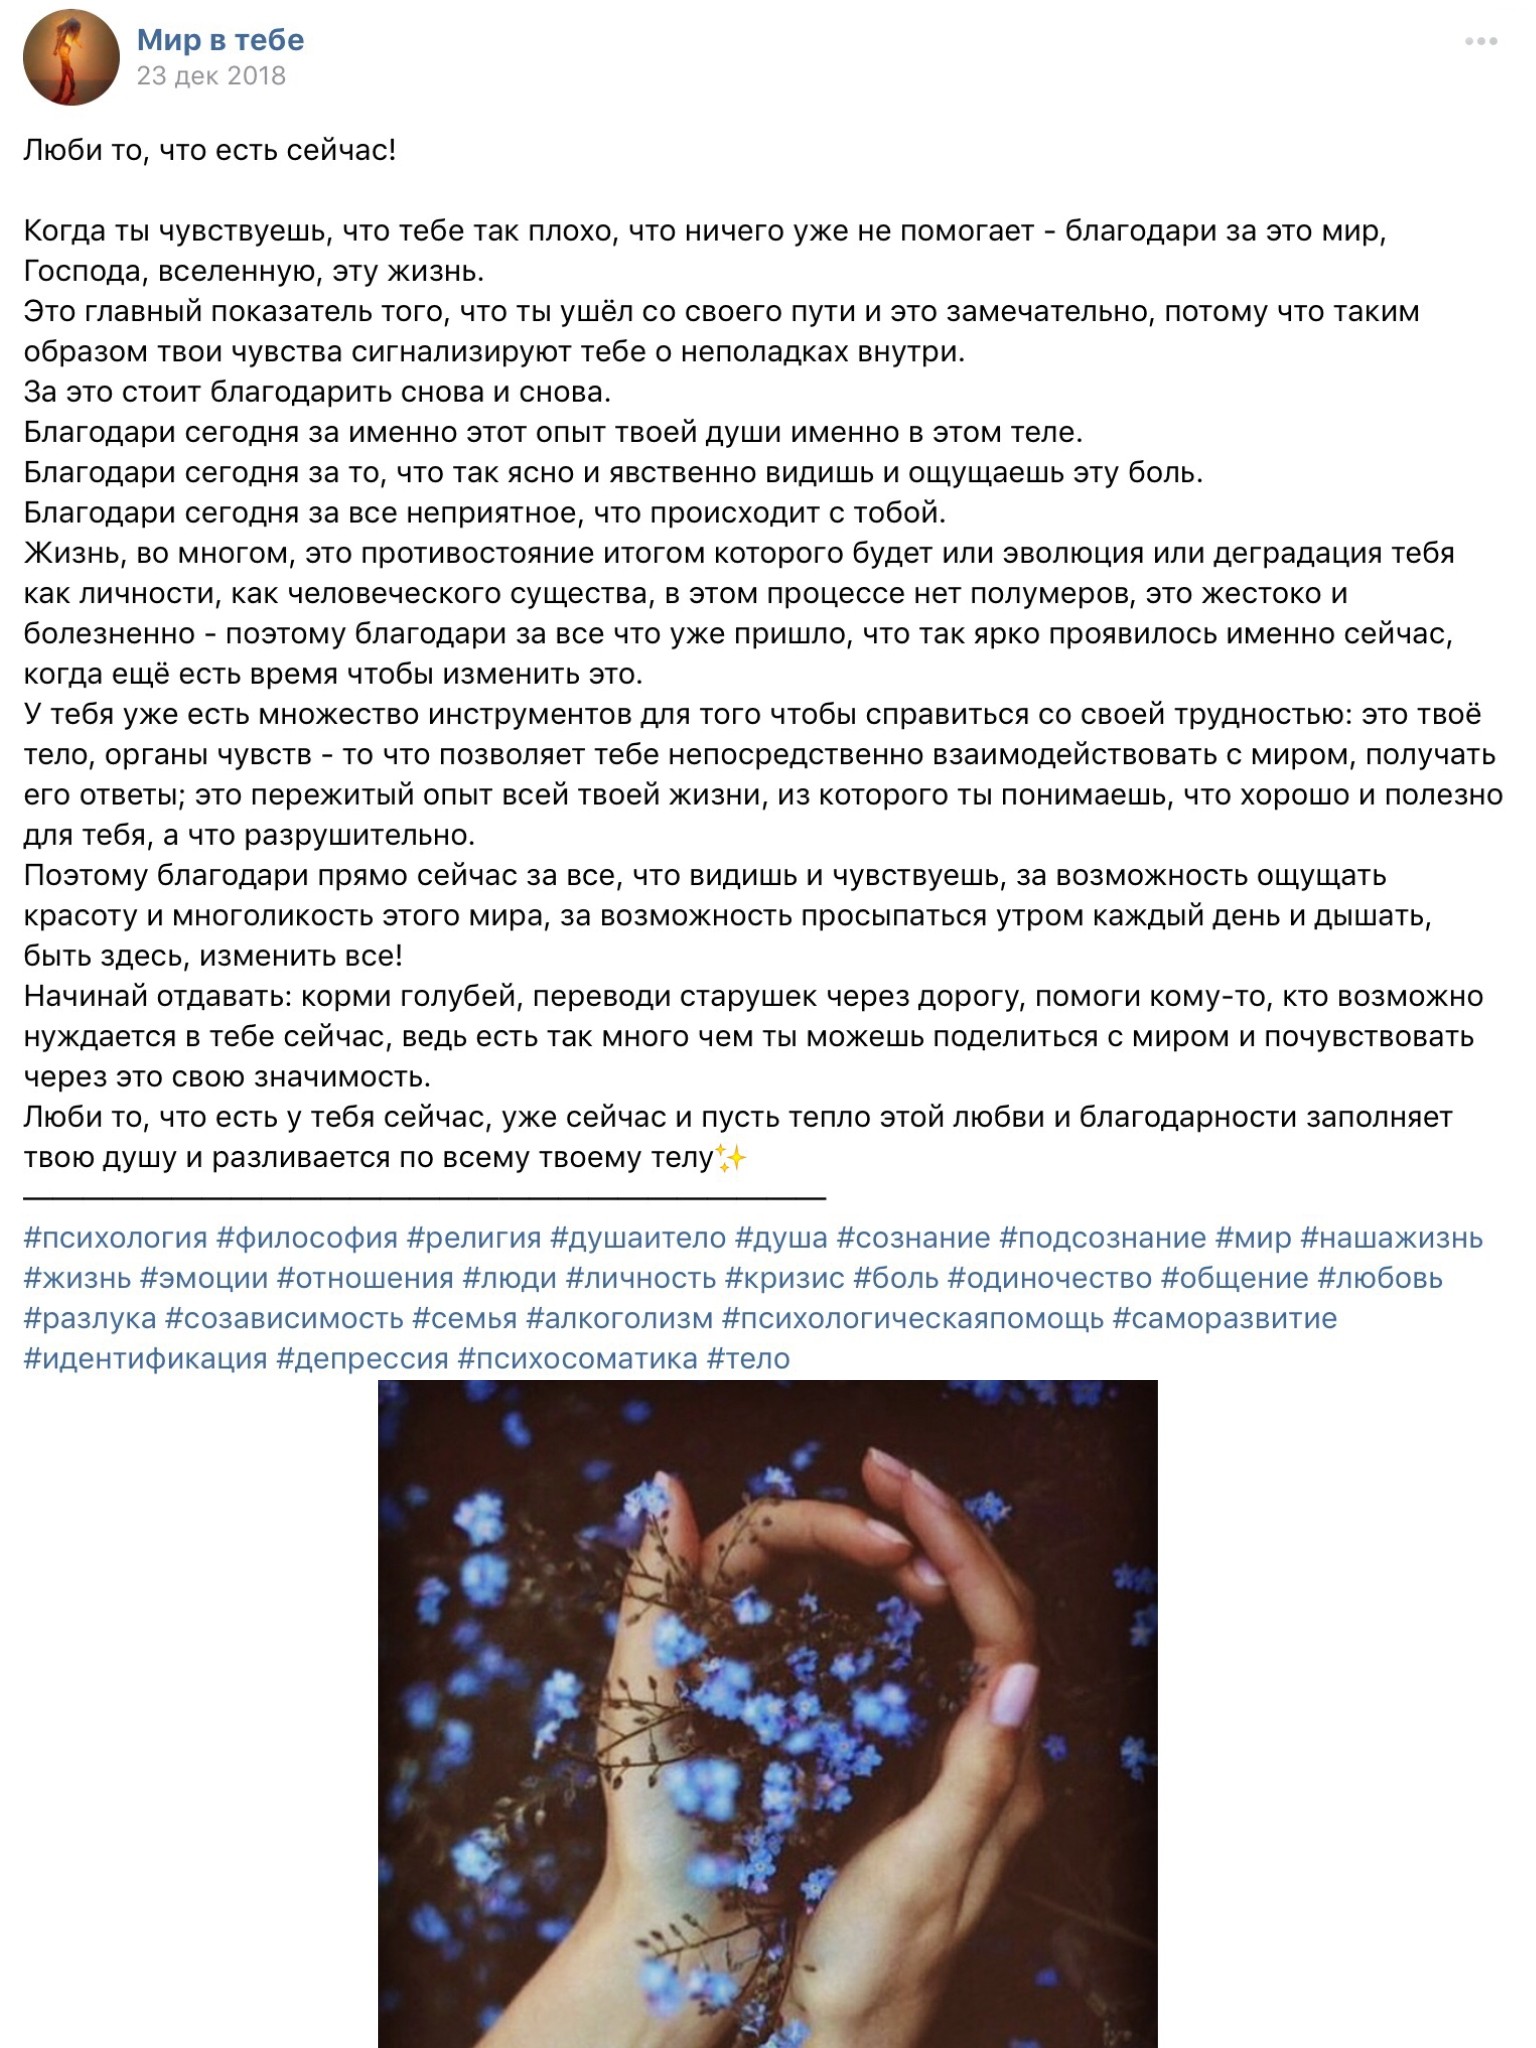 Пост для группы Вконтакте «Люби то, что есть сейчас!»